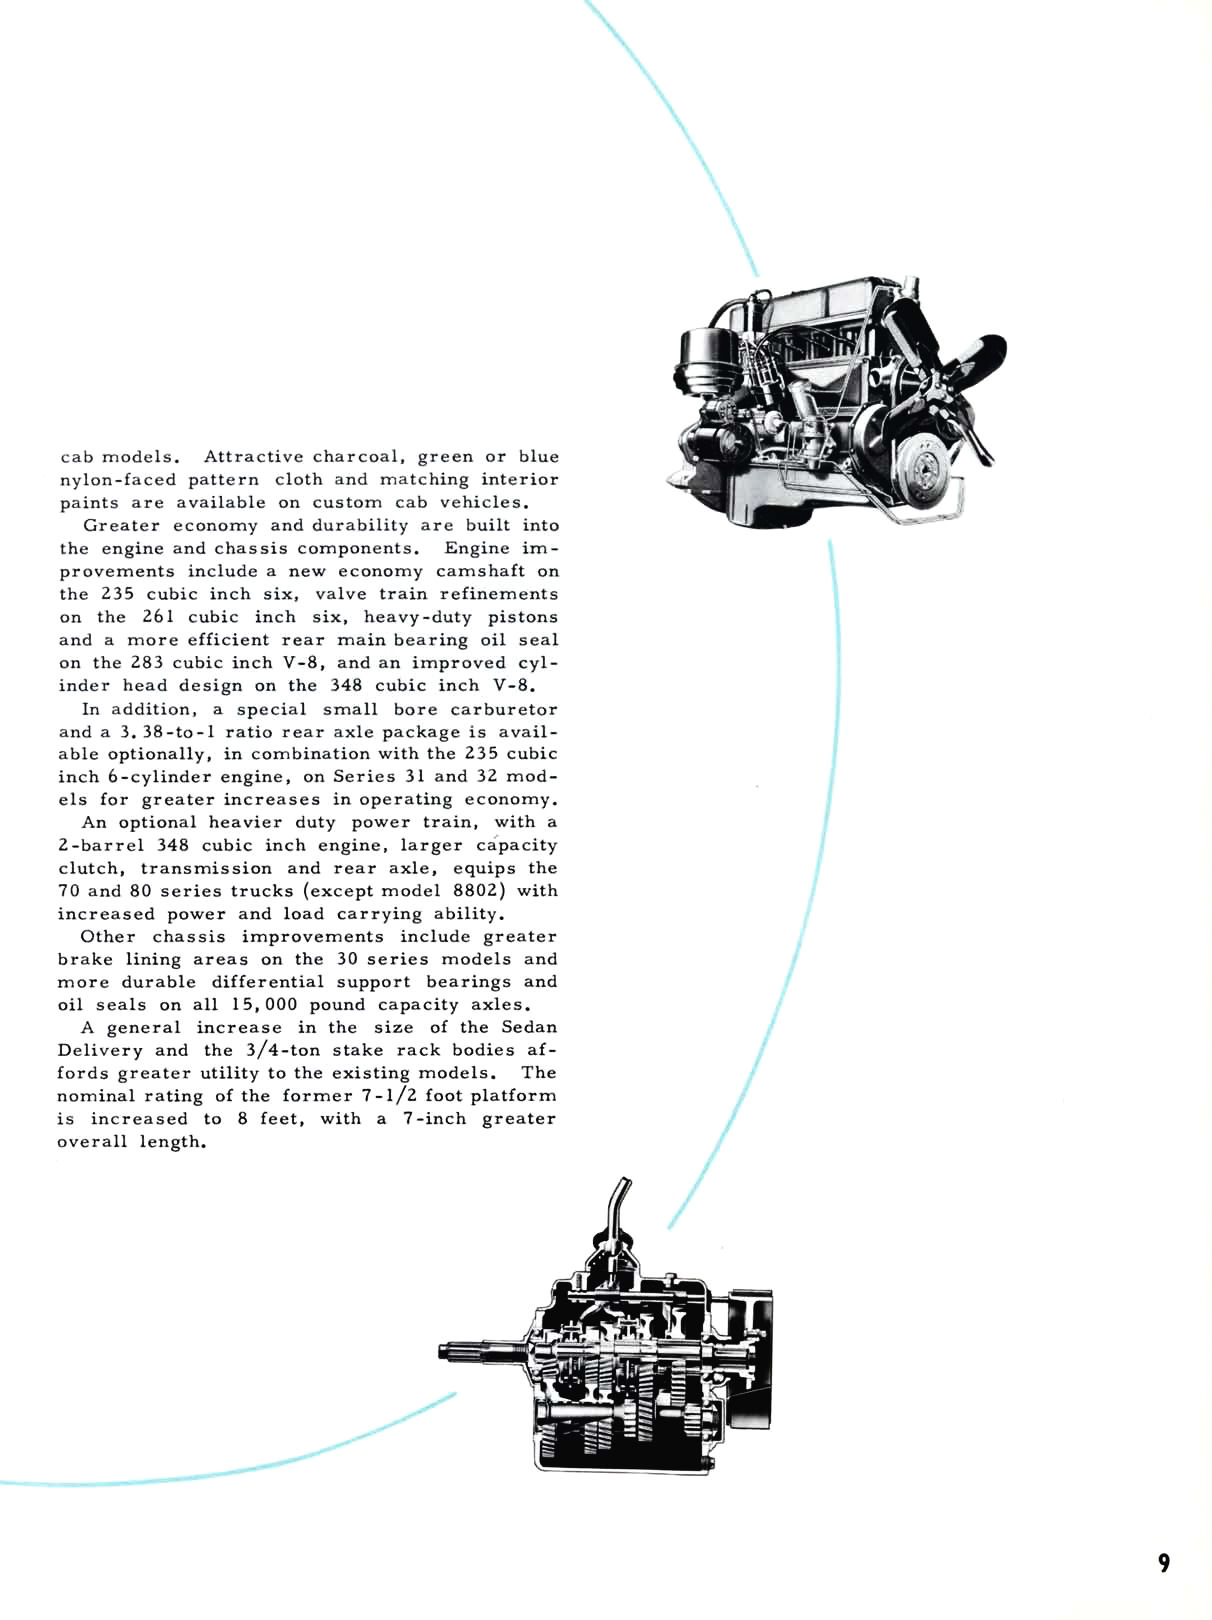 1959 Chevrolet Truck Engineering Features-09